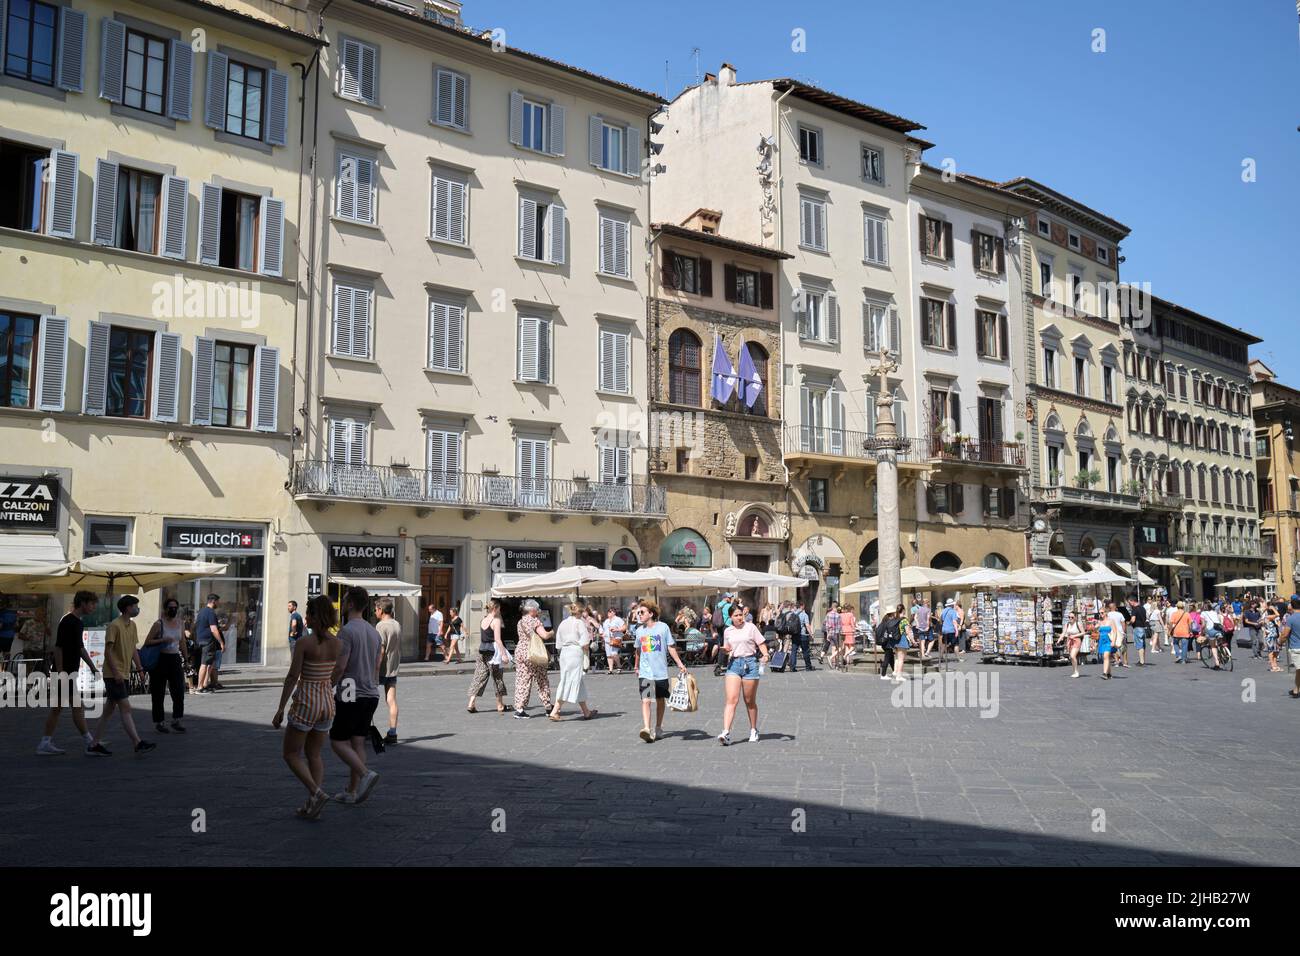 Piazza della Signoria Florence Italy Stock Photo